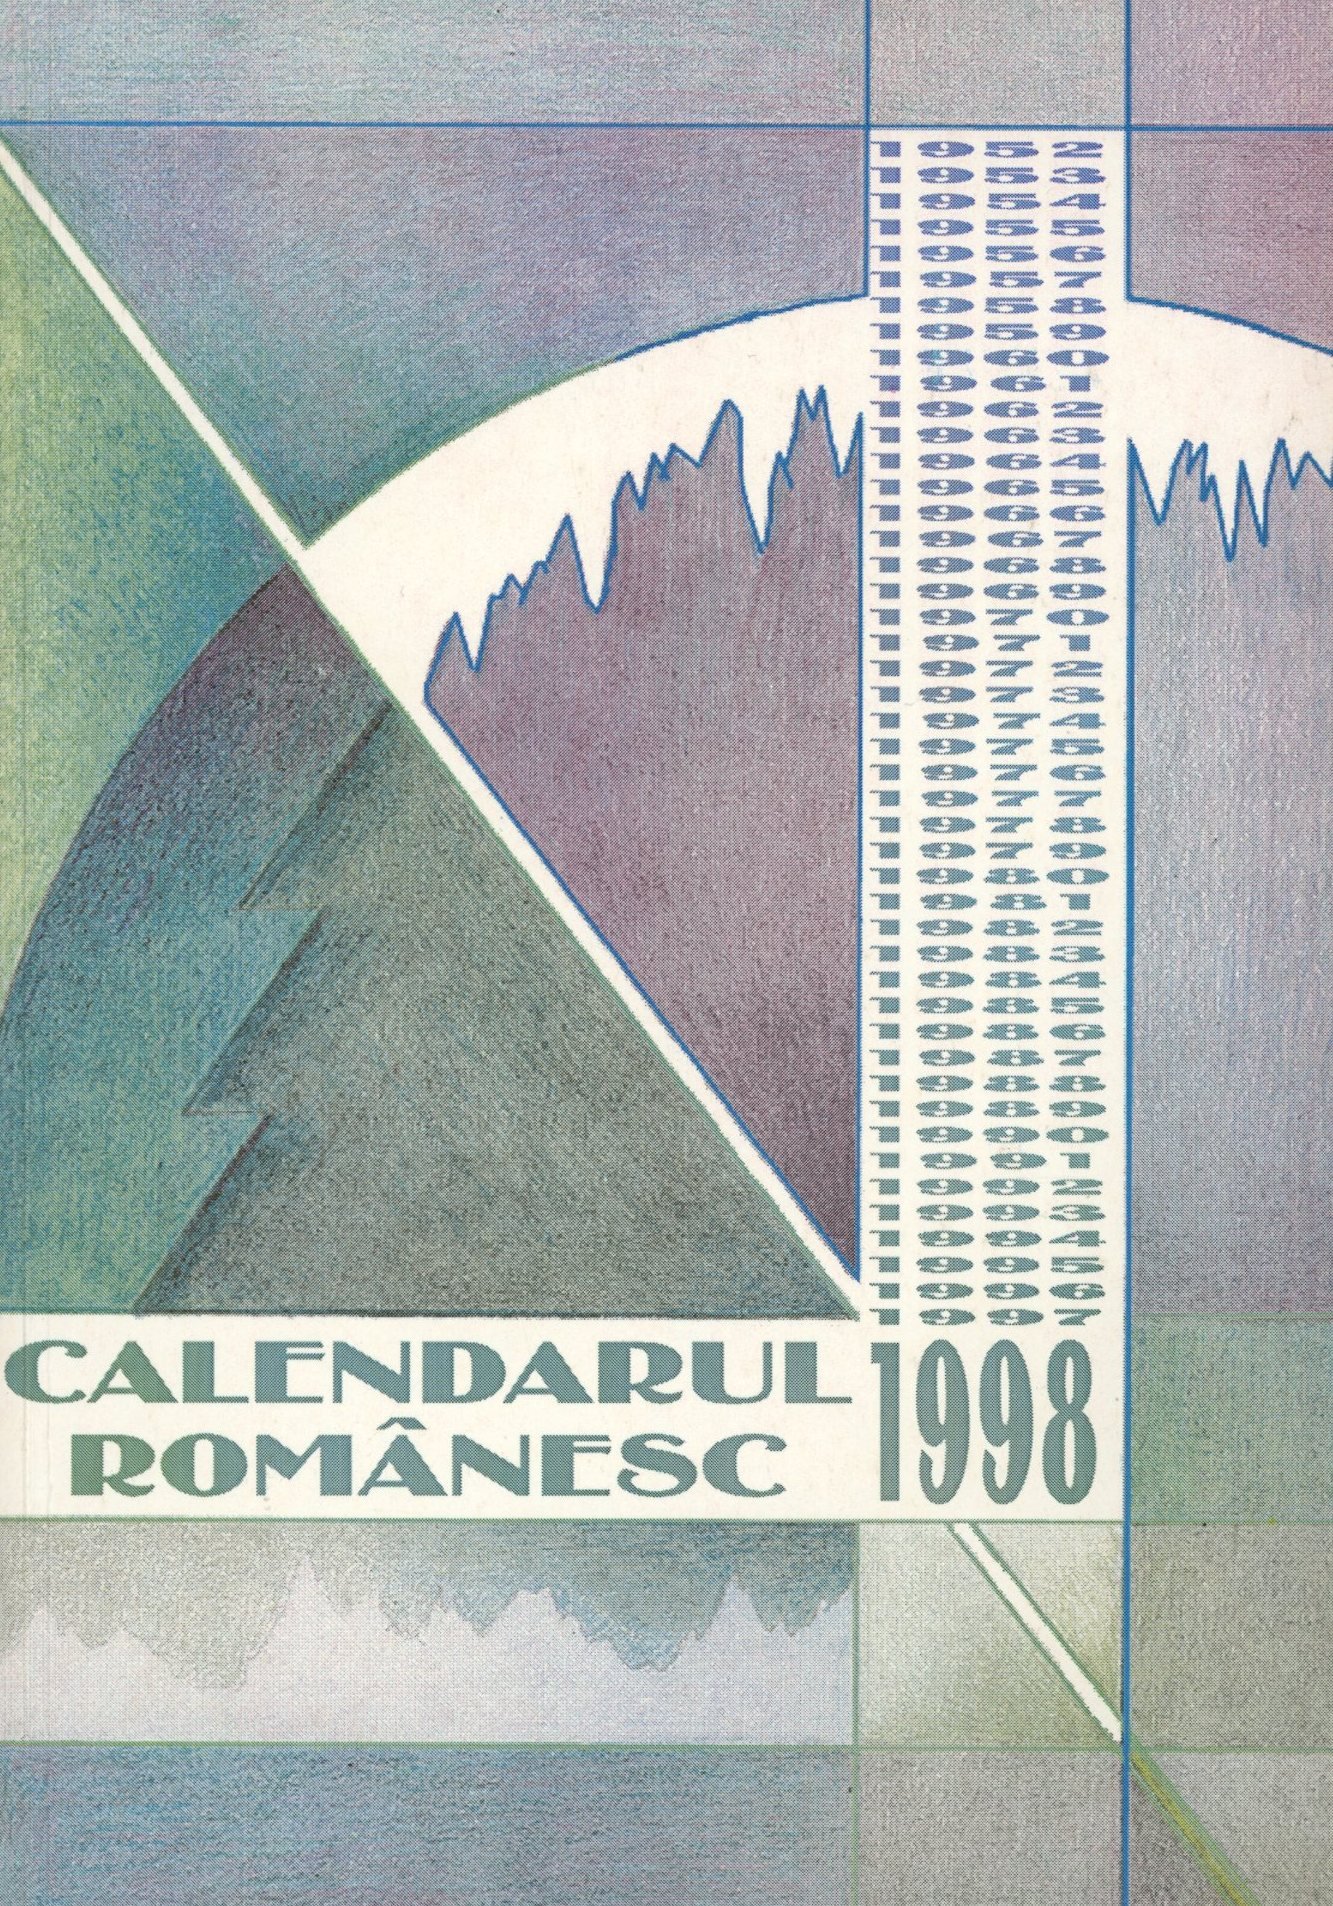 Calendarul Romănesc 1998 (Erkel Ferenc Múzeum és Könyvtár, Gyula CC BY-NC-SA)